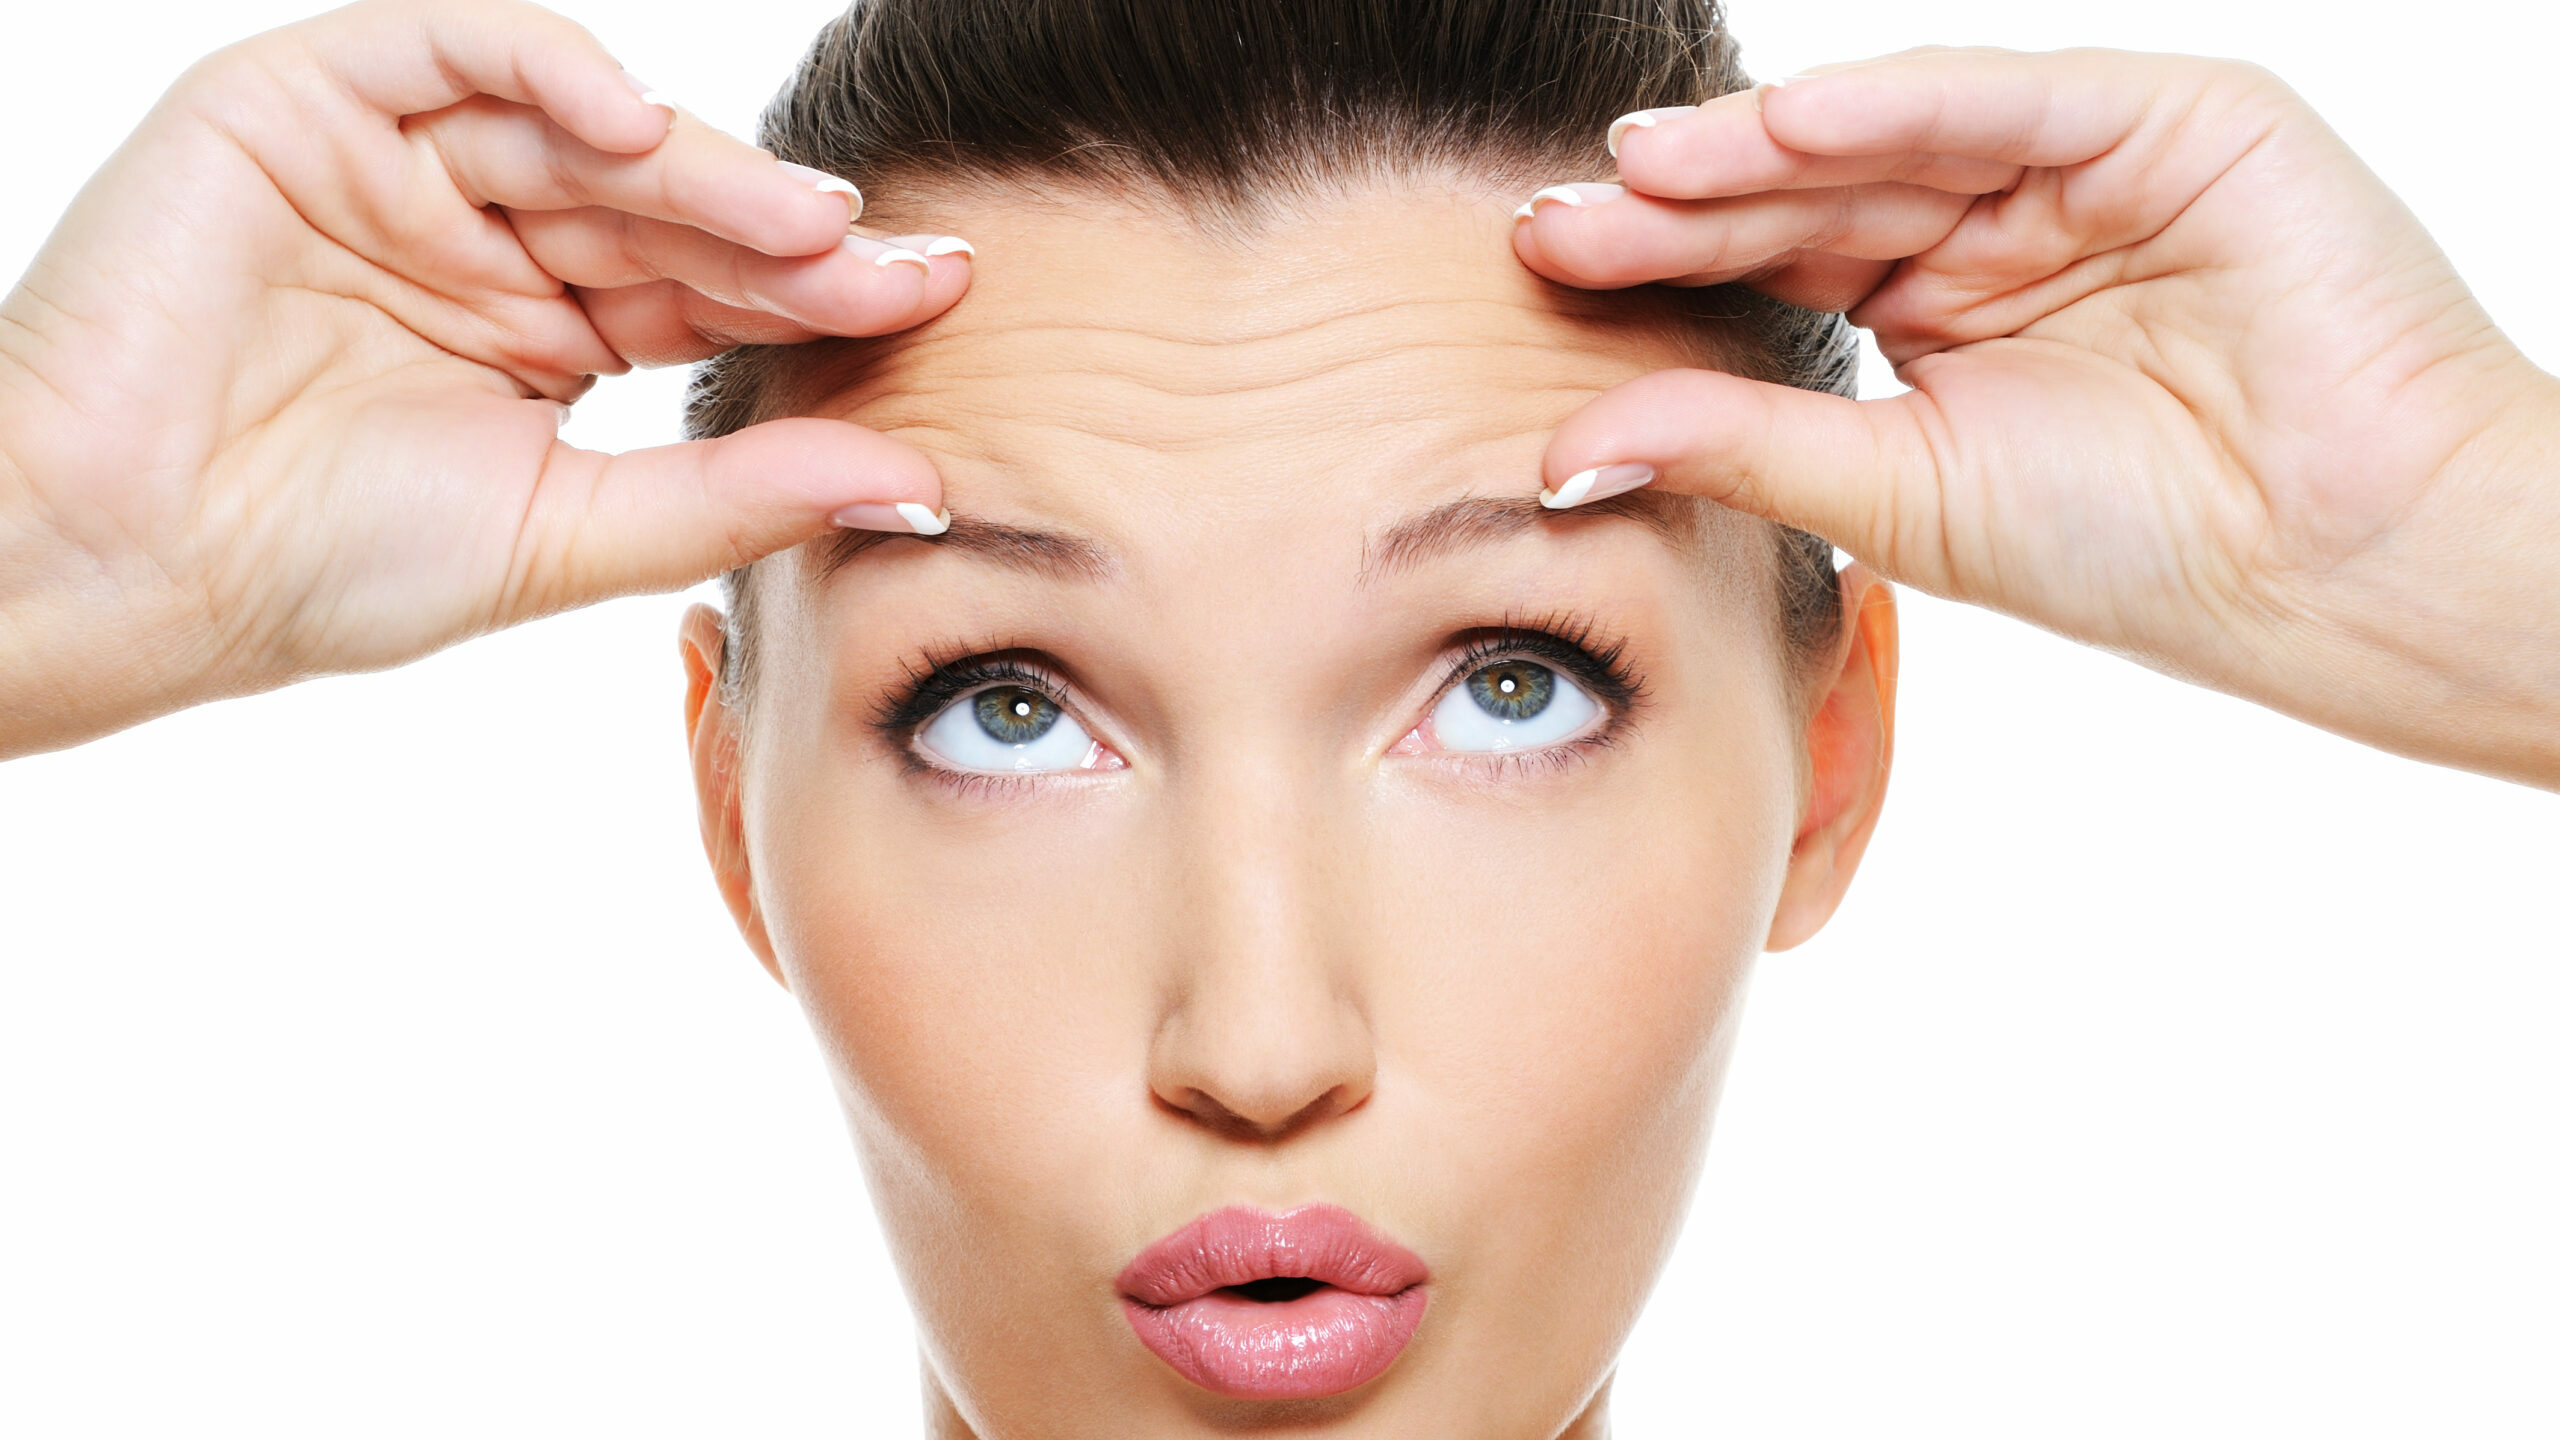 How to get rid of wrinkle between eyebrows